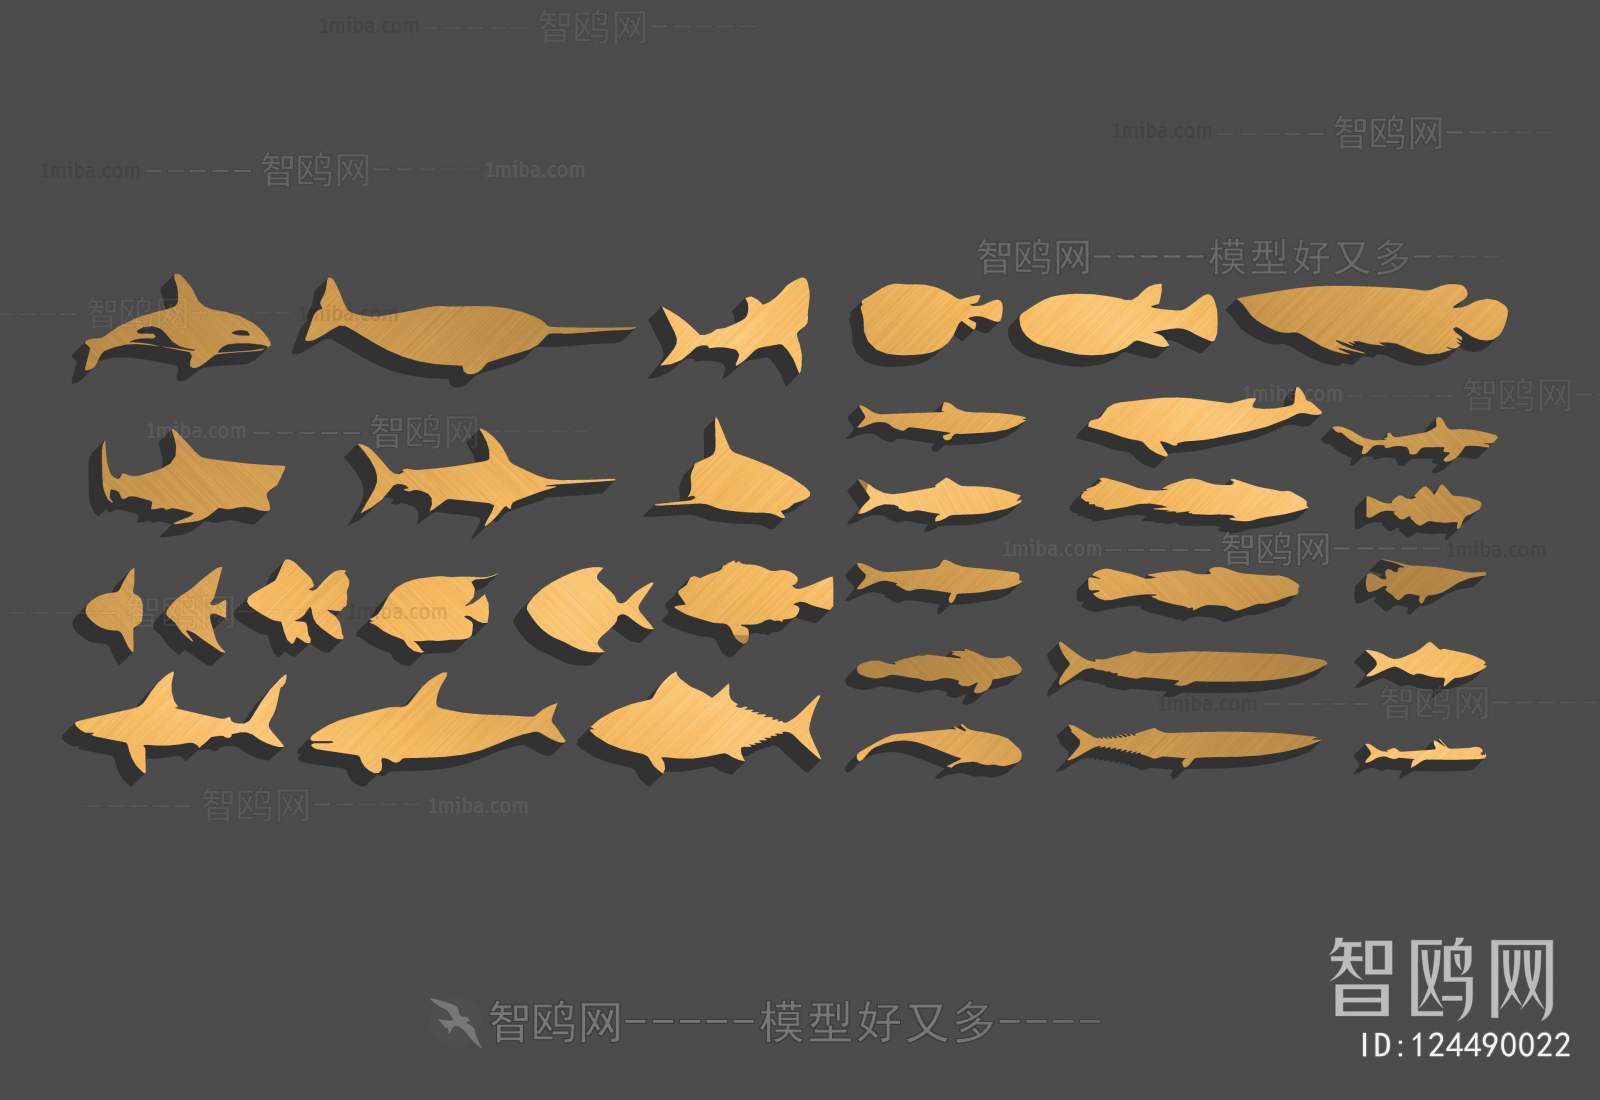 现代鱼类海洋生物剪影墙饰